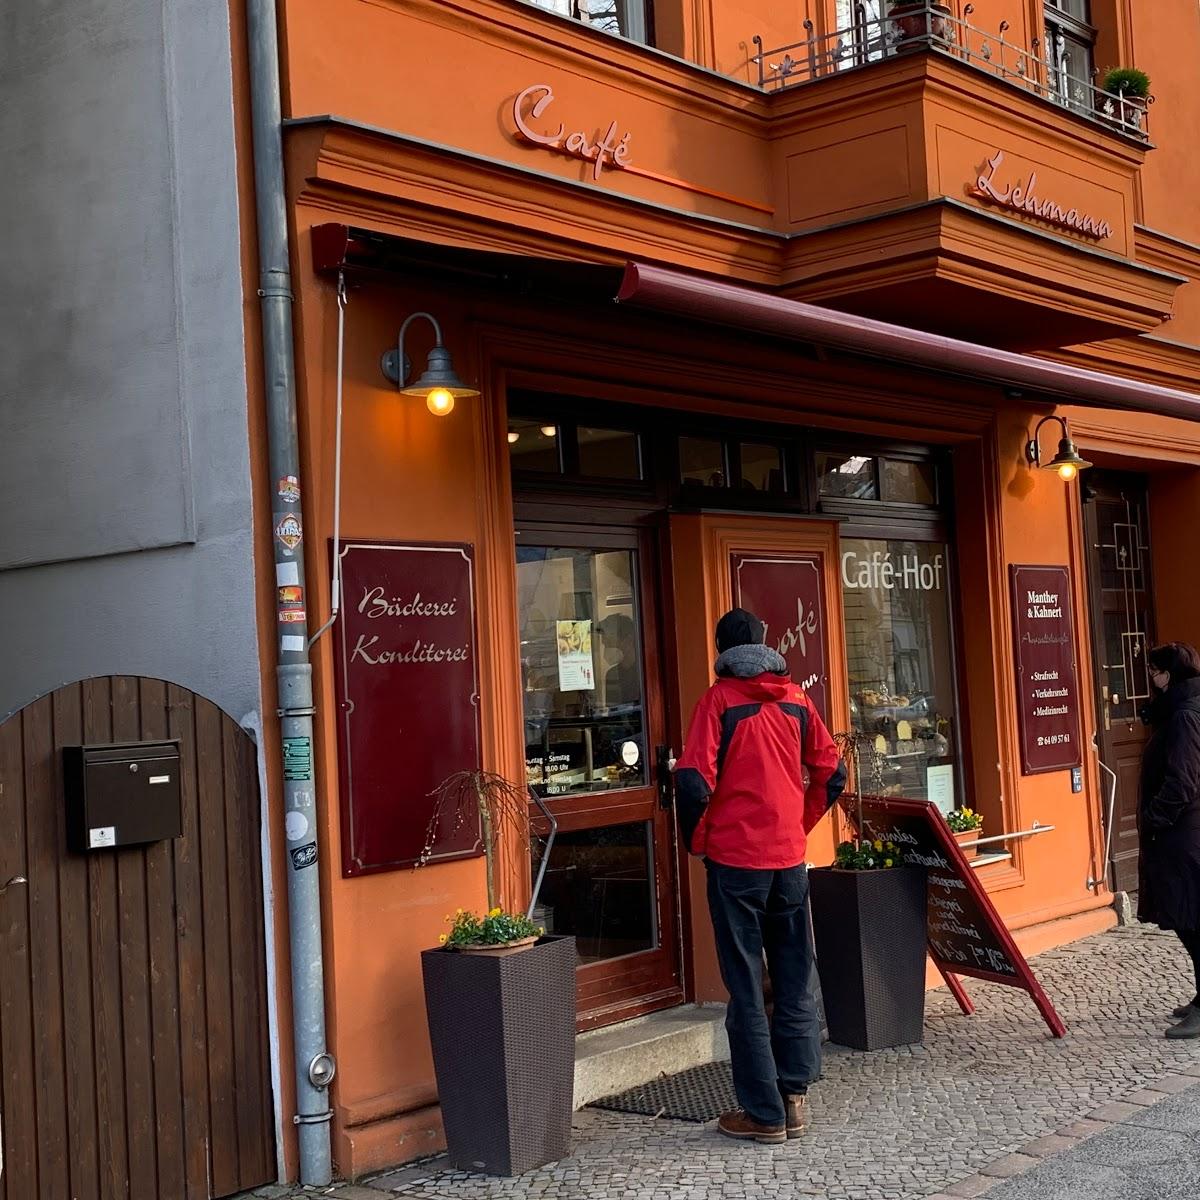 Restaurant "Café und Restaurant Lehmann" in Berlin